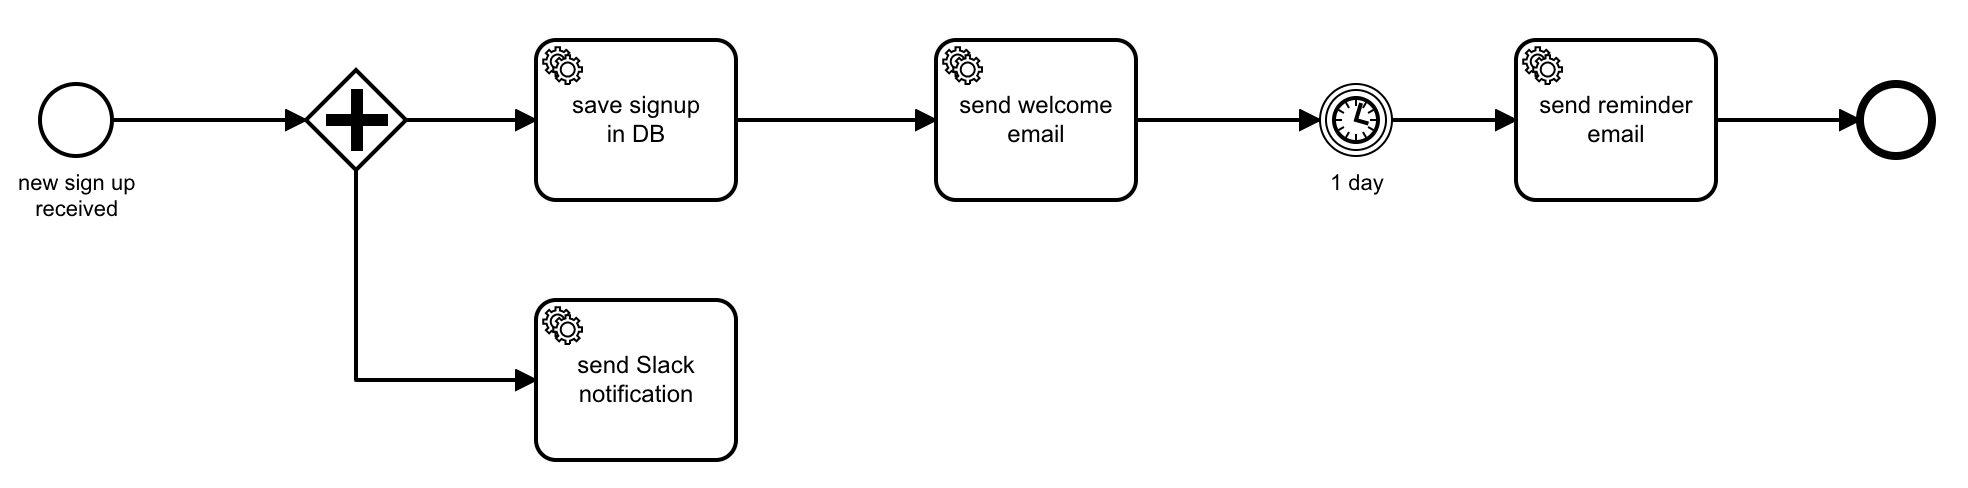 An example sign-up BPMN process